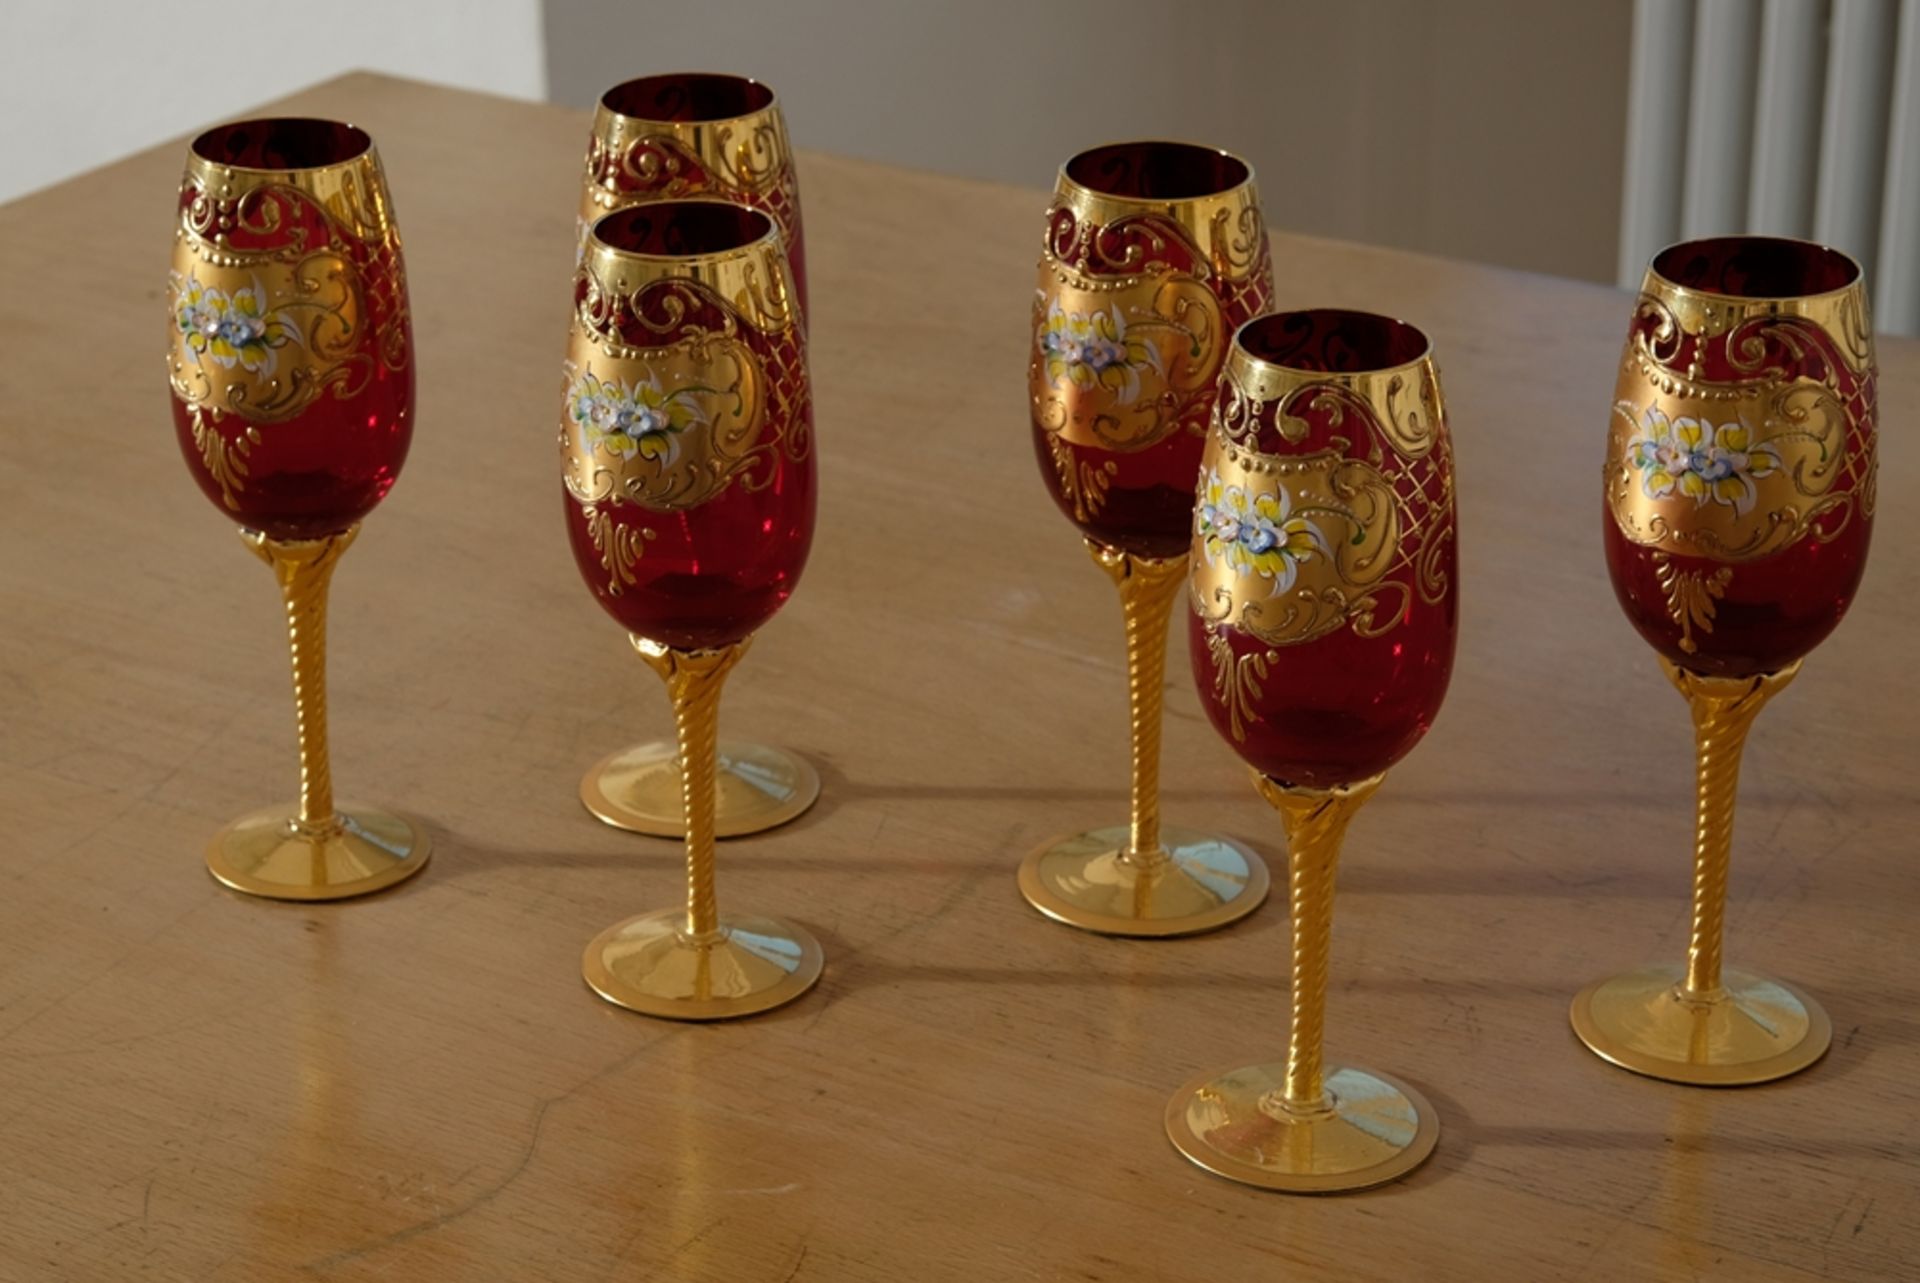 Sechs Weingläser Murano, Trefuochi, originale venezianische Weingläser, rubinrotes Glas, Blattgold  - Bild 2 aus 3